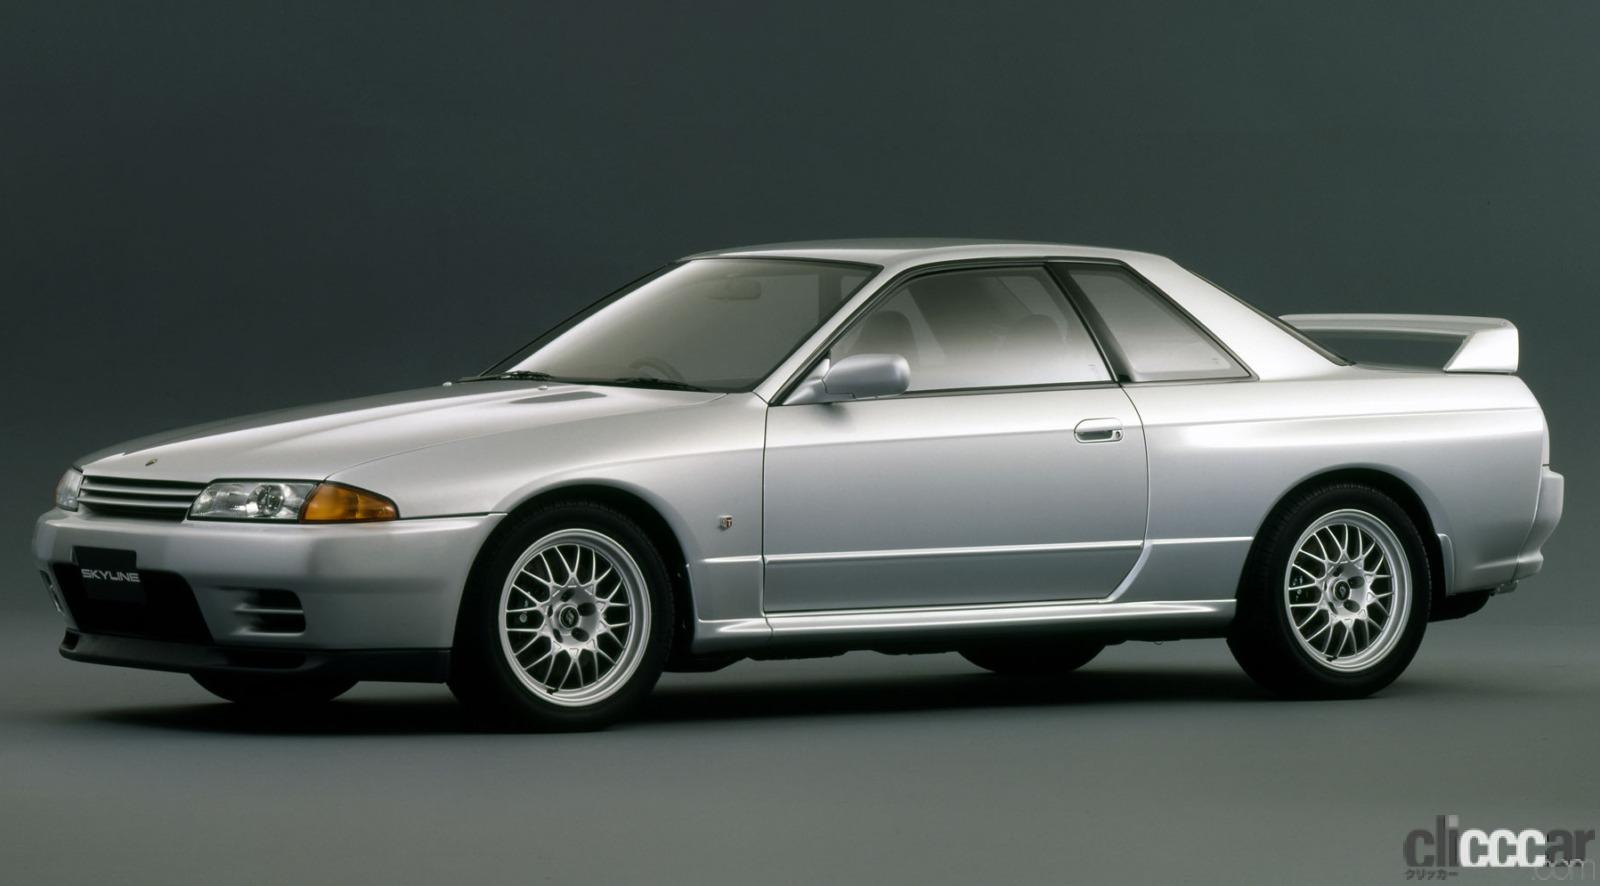 1986 Nissan Skyline Gt R R32 B 画像 旧車は燃費が悪くガソリン代が高い 旧車好きの66 0 が愛車に ハイオク 燃費は10km L以上も意外に多い Clicccar Com